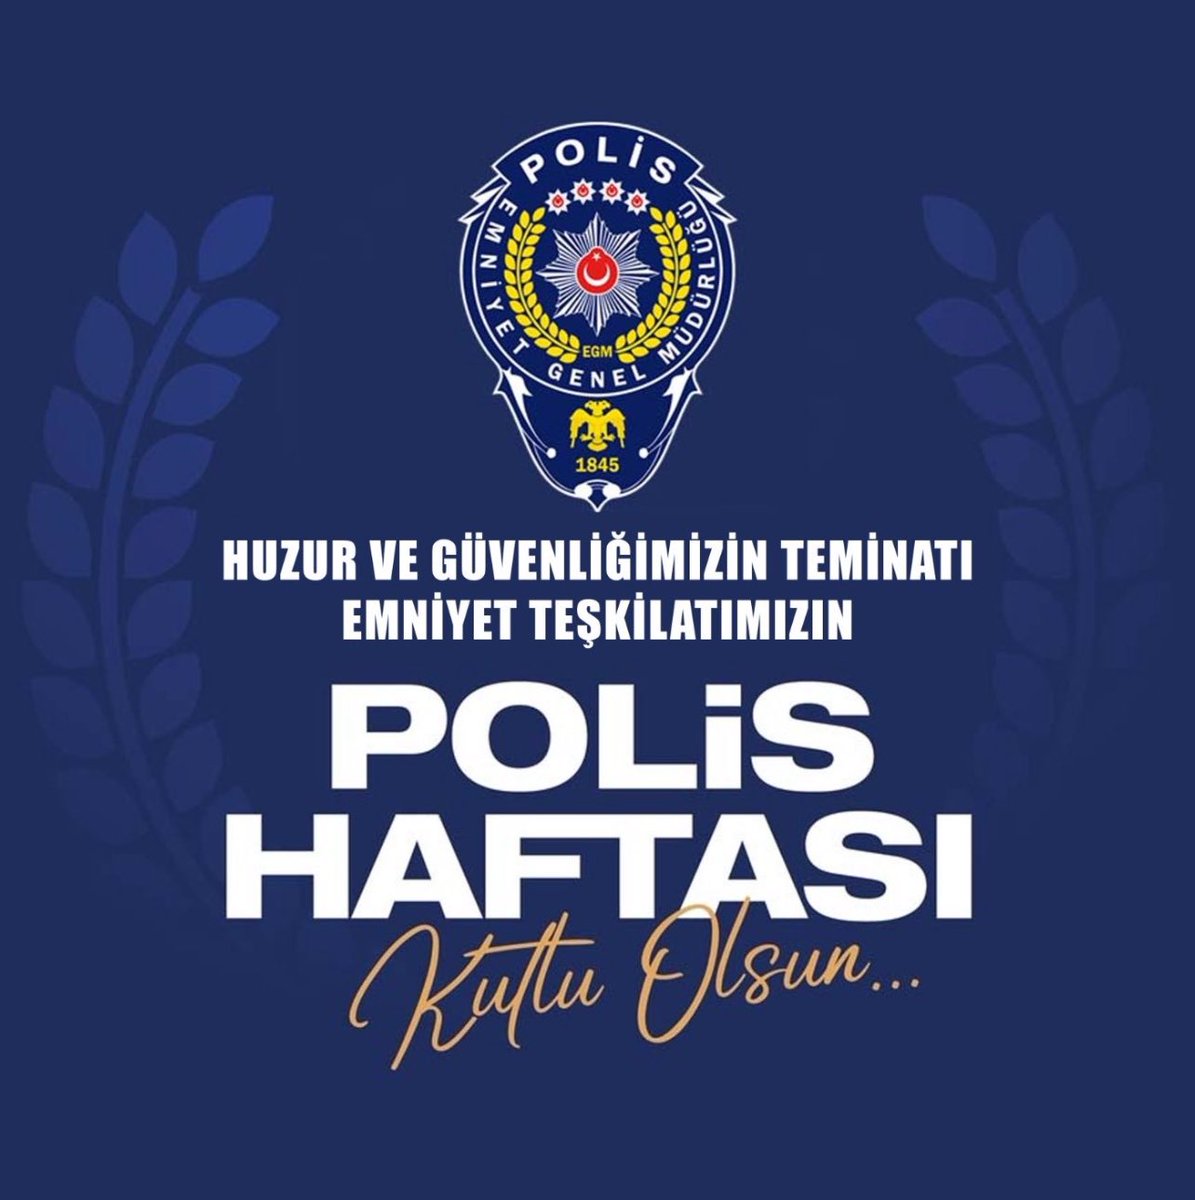 Huzurumuzun ve güvenliğimizin teminatı kahraman #TürkPolisTeşkilatı'mızın 
#PolisHaftası kutlu olsun🇹🇷